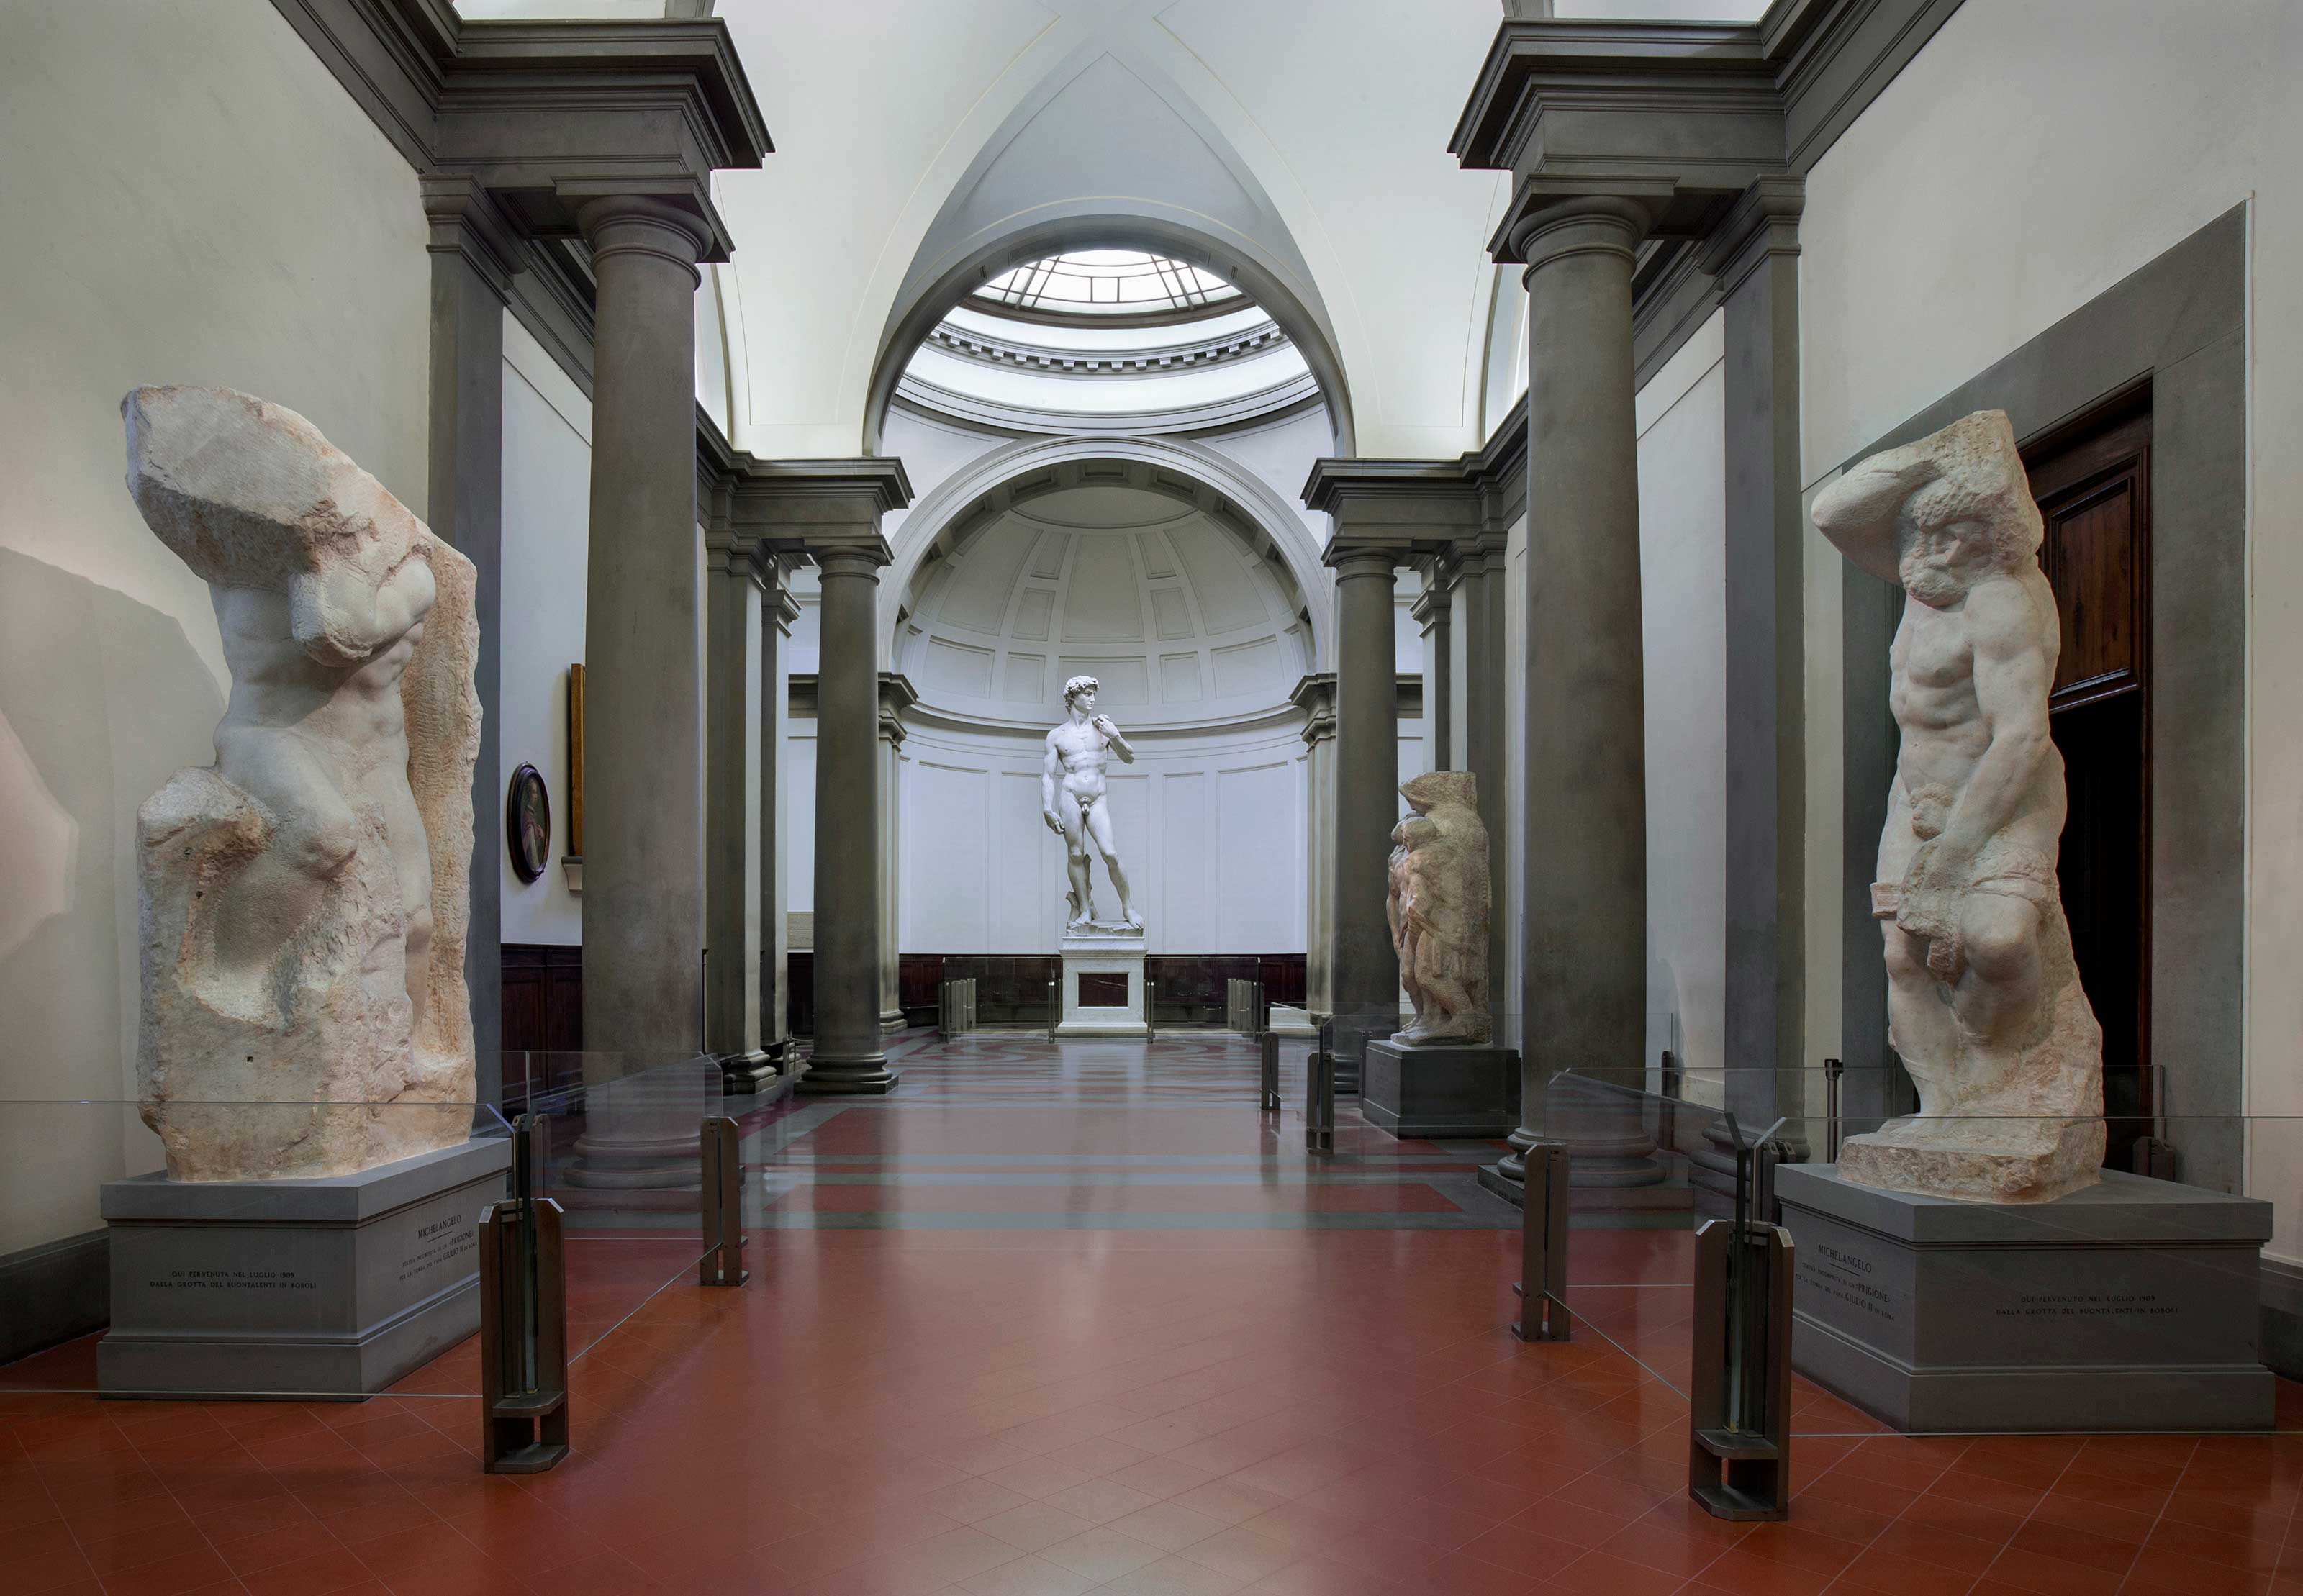 Tessuto e ricchezza a Firenze nel Trecento. Lana, seta, pittura - Mostra -  Firenze - Galleria dell'Accademia 